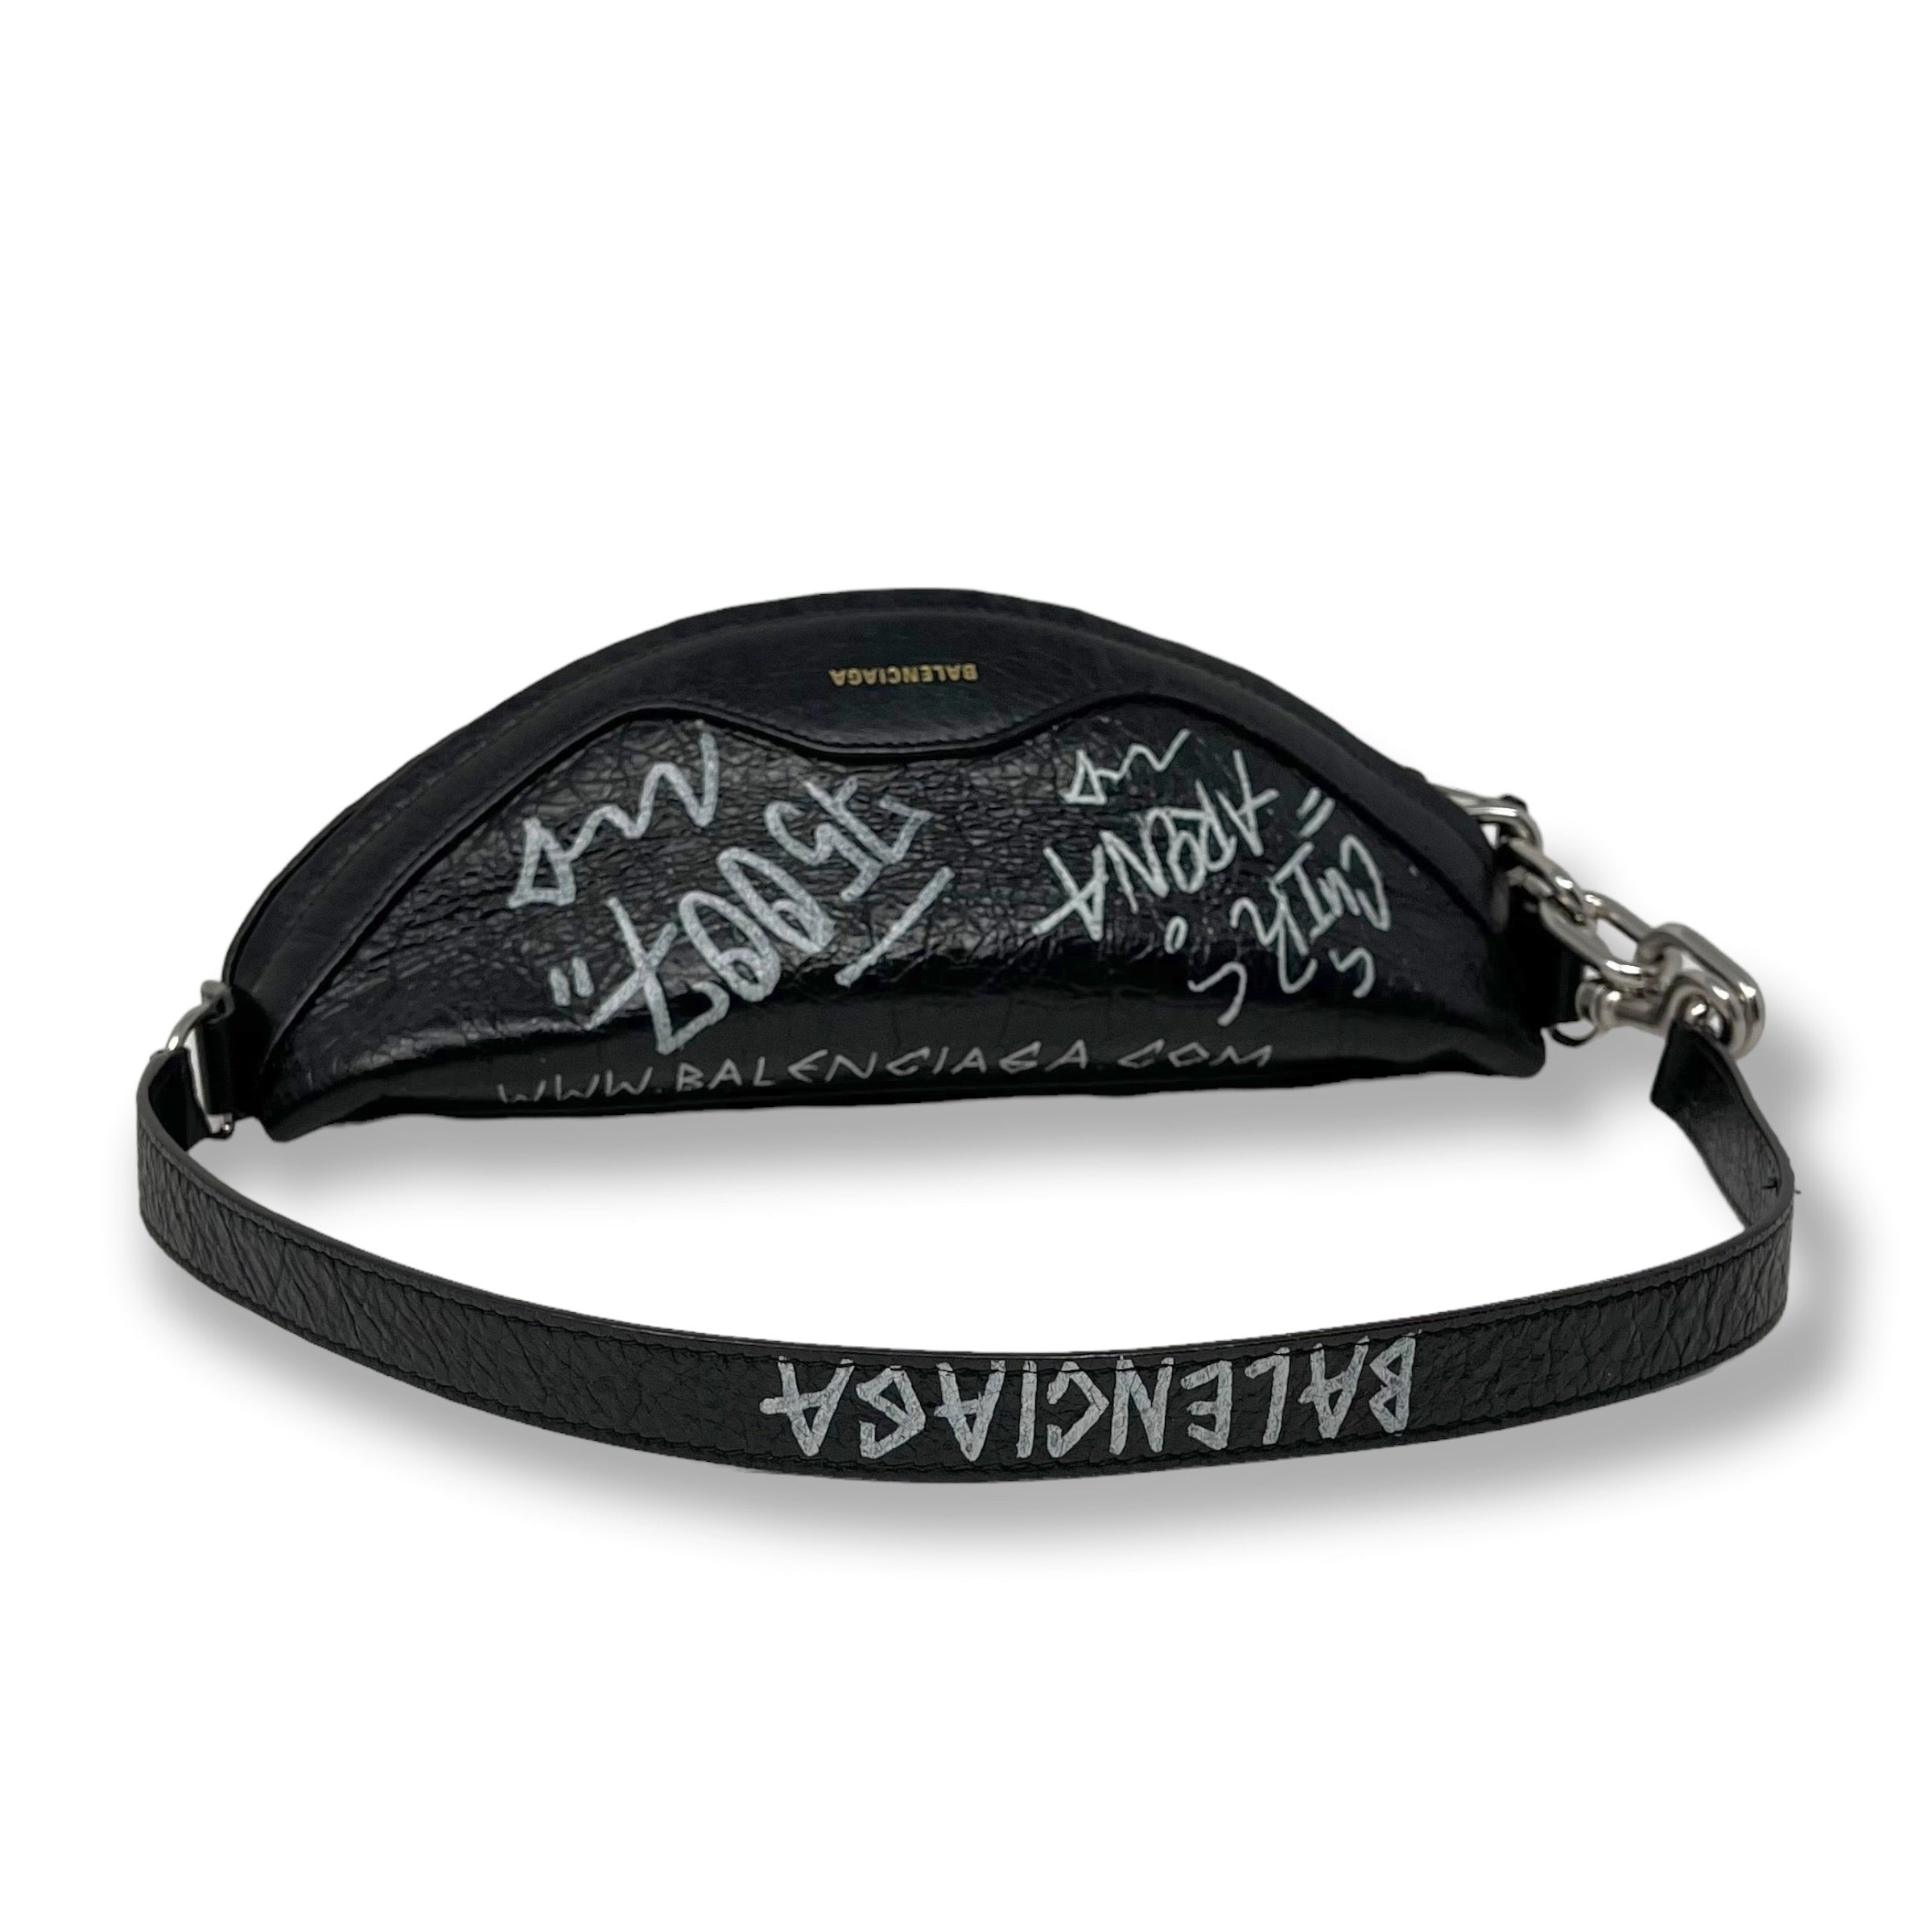 Balenciaga Black Graffiti Souvenir Shoulder Belt Bag